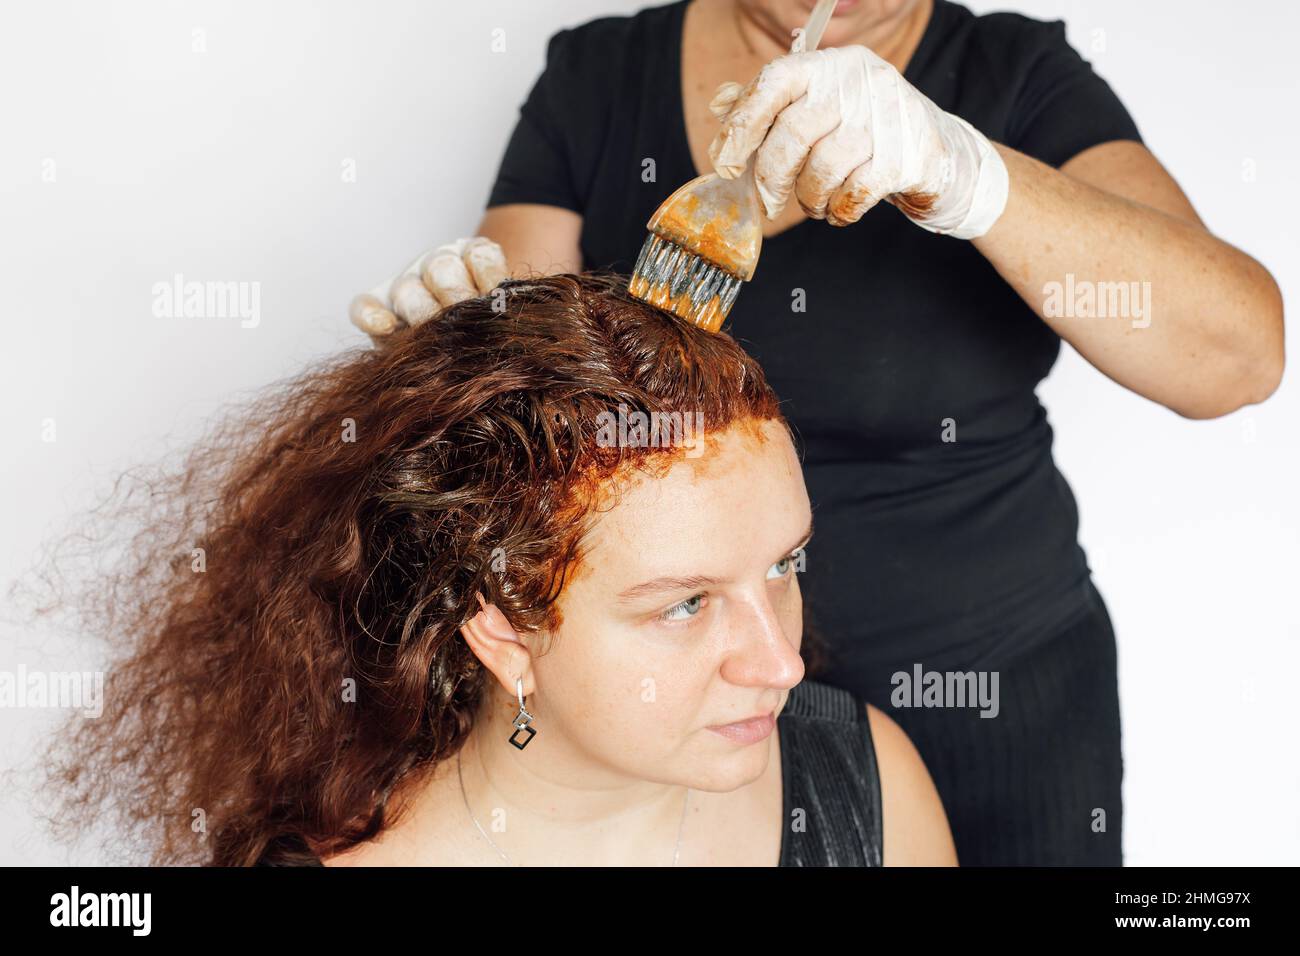 Ältere Dame hinter Frau färbt Haare in rot mit Pinsel in den Händen mit Latexhandschuhen auf, weißer Hintergrund. Haarfärbung zu Hause. Graue Farbe wird loswerden Stockfoto